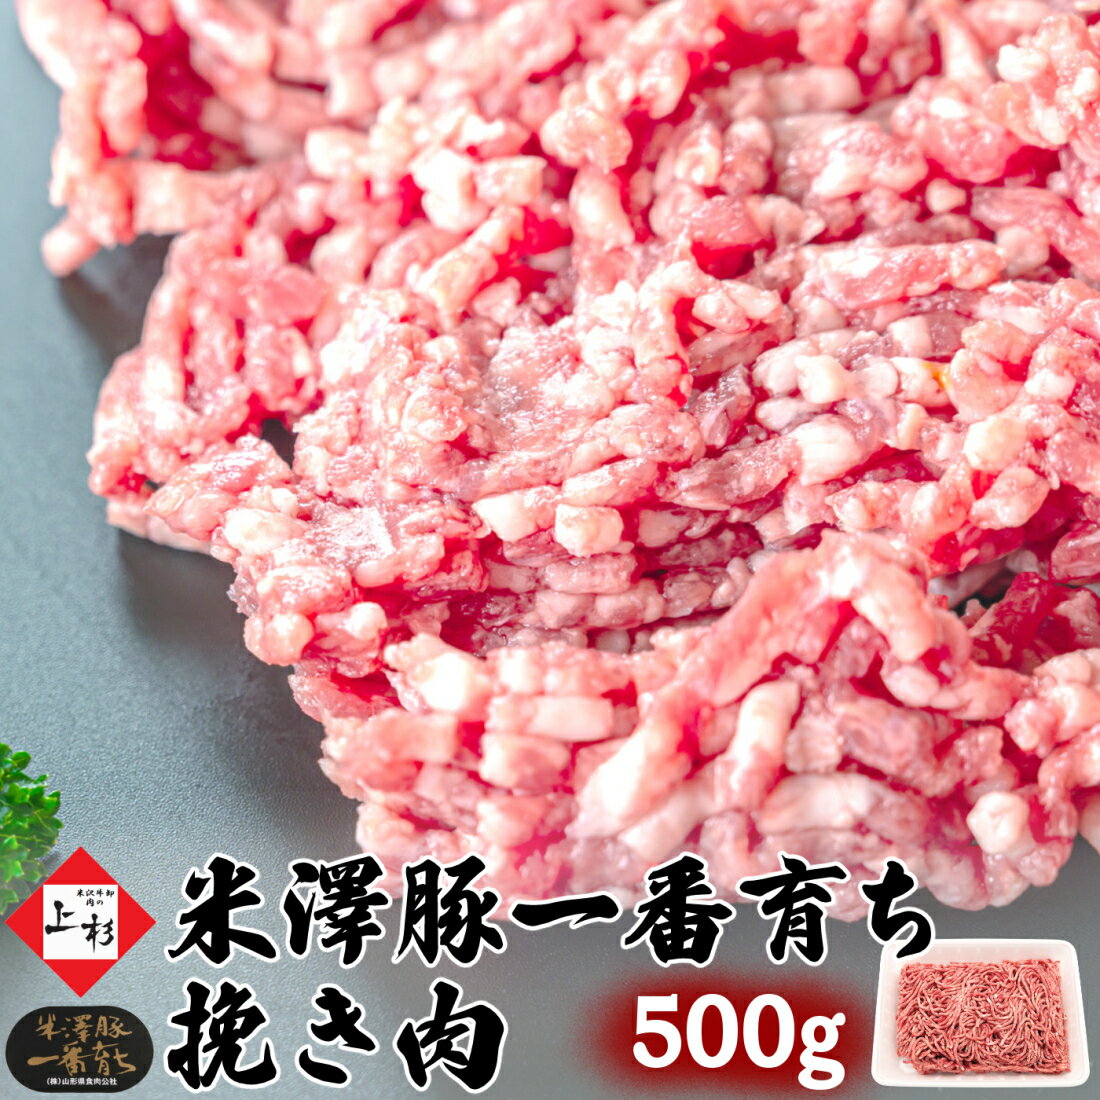 米澤豚一番育ち 挽き肉 500g (250g×2) | 国産豚 ブランド豚 デュロック豚 米沢豚 豚肉 バラ肉 ひき肉 粗挽き 挽肉 粗…